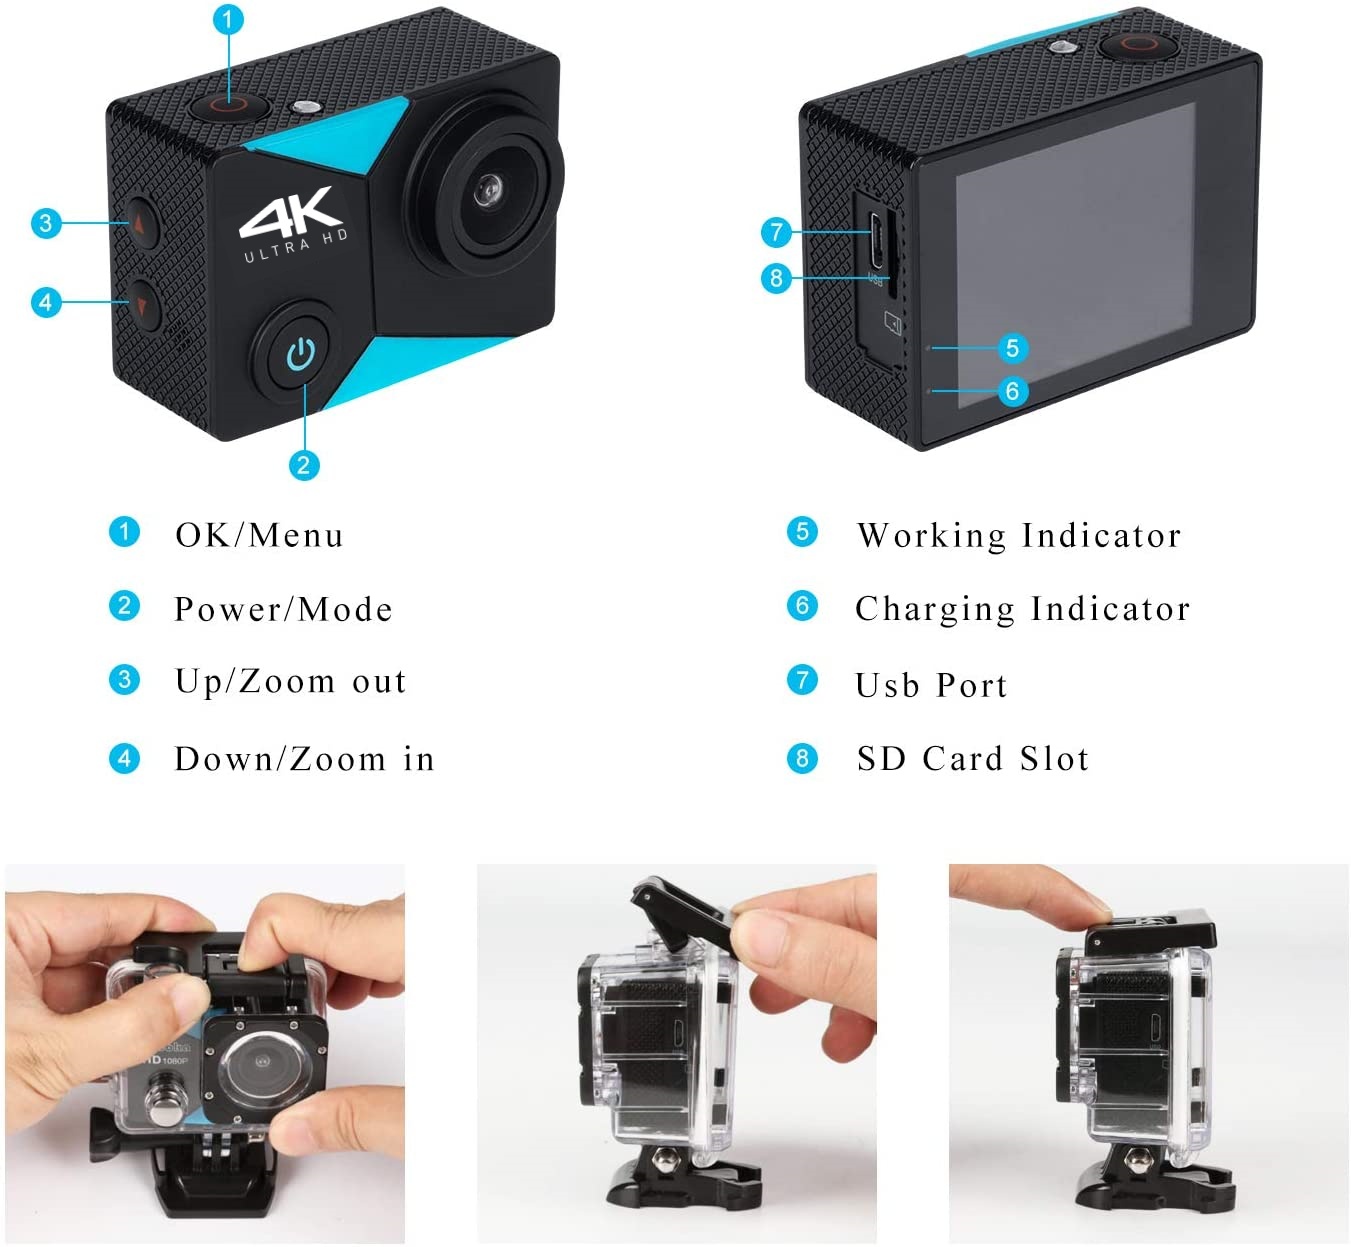 ข้อมูลประกอบของ Nanotech กล้องกันน้ำ ถ่ายใต้น้ำ  มีระบบกันสั่นครบ 4K Ultra HD waterproof WIFI FREE Remote - สีดำ K80 2022 ล่าสุด แถมฟรี รีโมท+ไมค์ คุ้มที่สุด